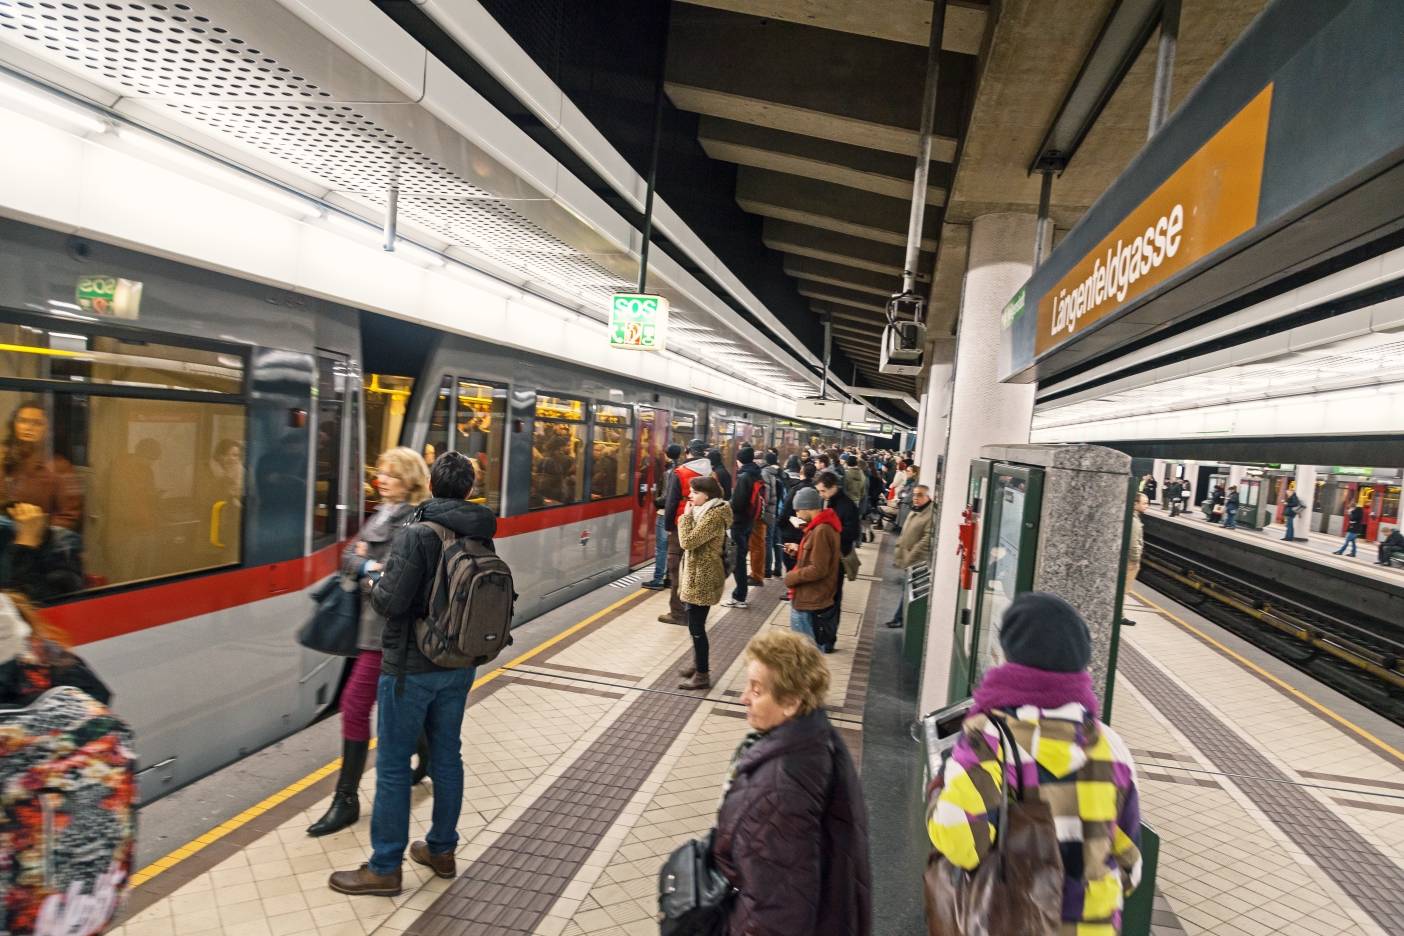 U-Bahn Zug der Linie U6 in Fahrtrichtung Floridsdorf beim Halt Station Längenfeldgasse.